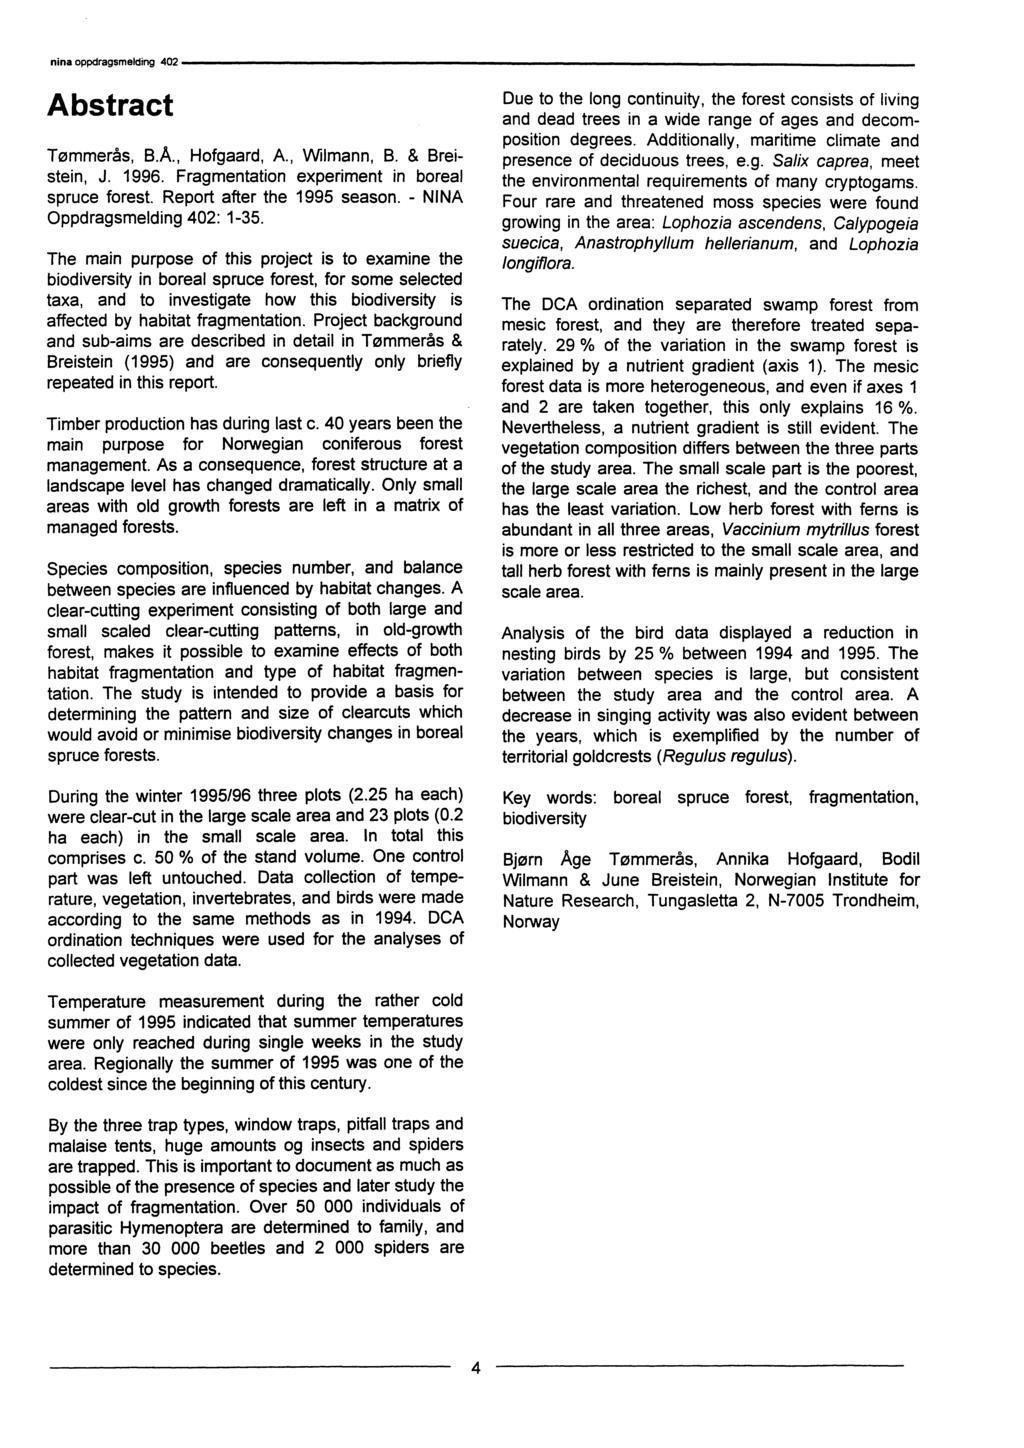 Abstract Tømmerås, B.Å., Hofgaard, A., Wilmann, B. & Breistein, J. 1996. Fragmentation experiment in boreal spruce forest. Report after the 1995 season. - NINA Oppdragsmelding 402: 1-35.